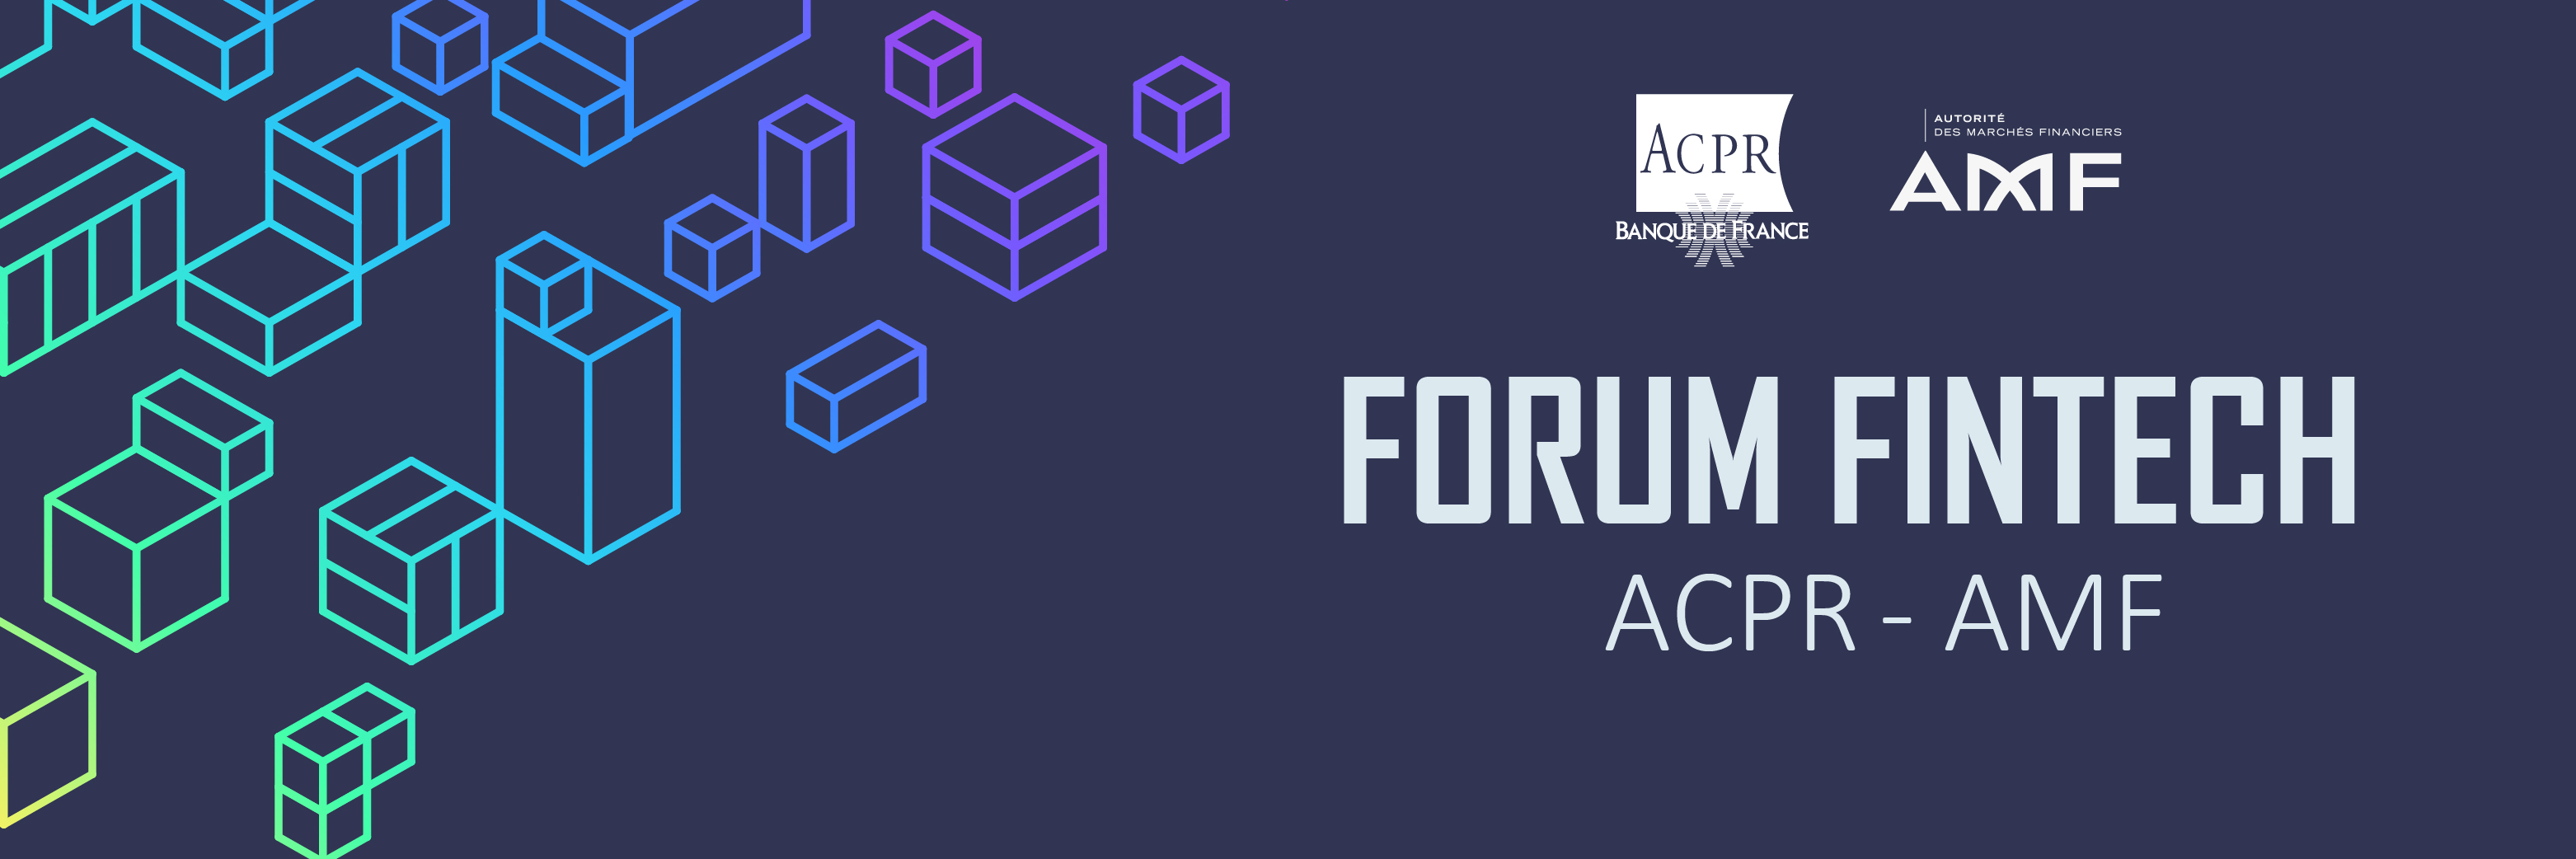 visuel-forum-fintech-2021_0.jpg